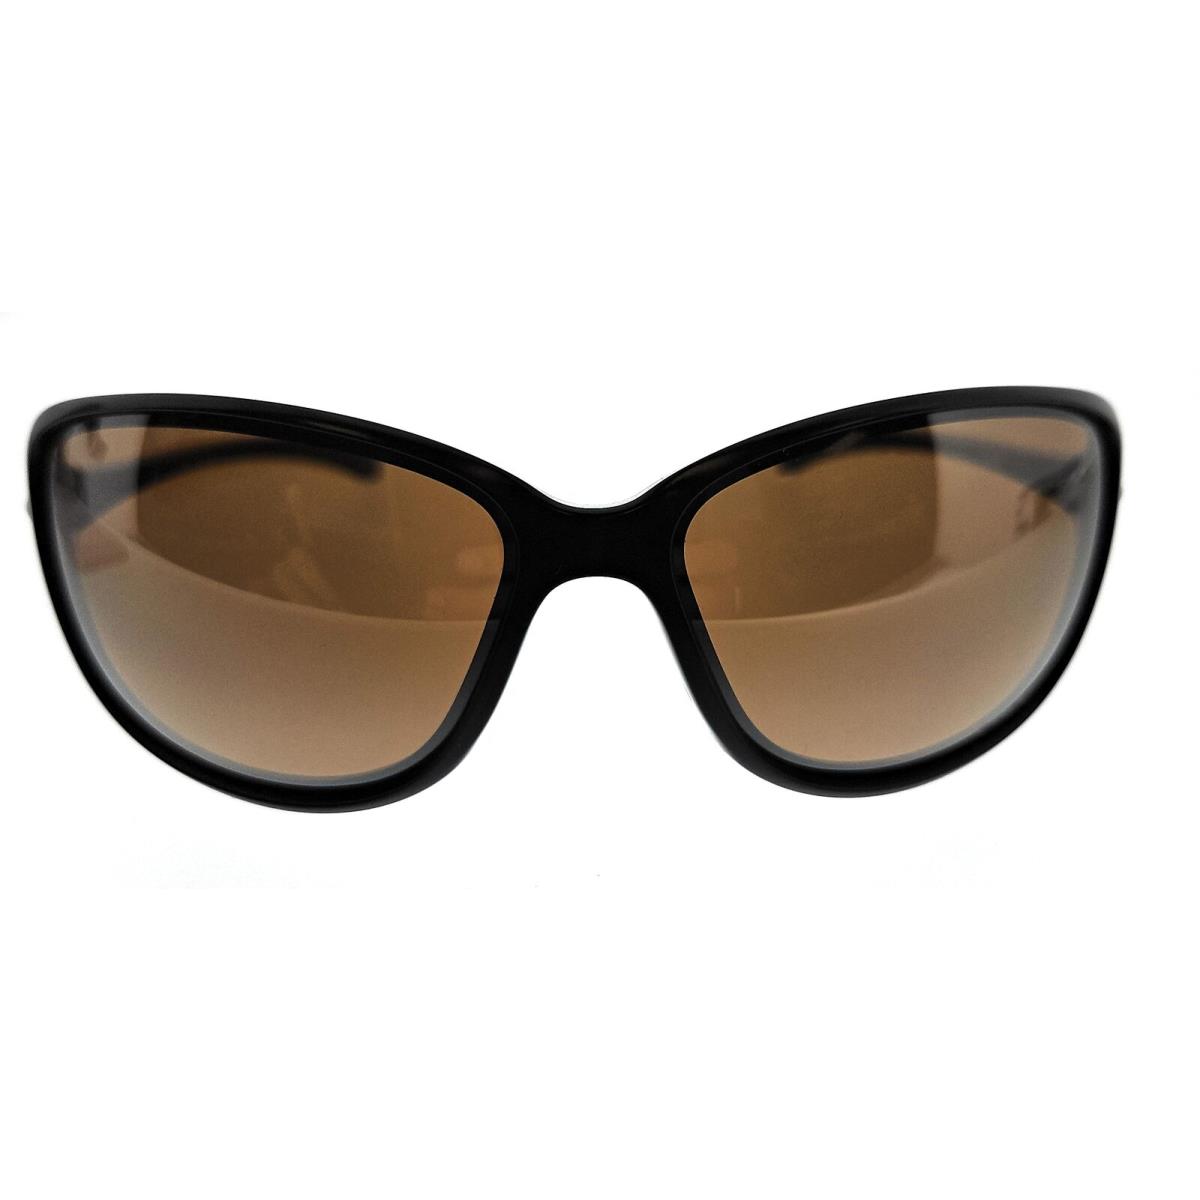 Oakley 0OO9301 930107 Cohort Matte Black Butterfly Sunglasses